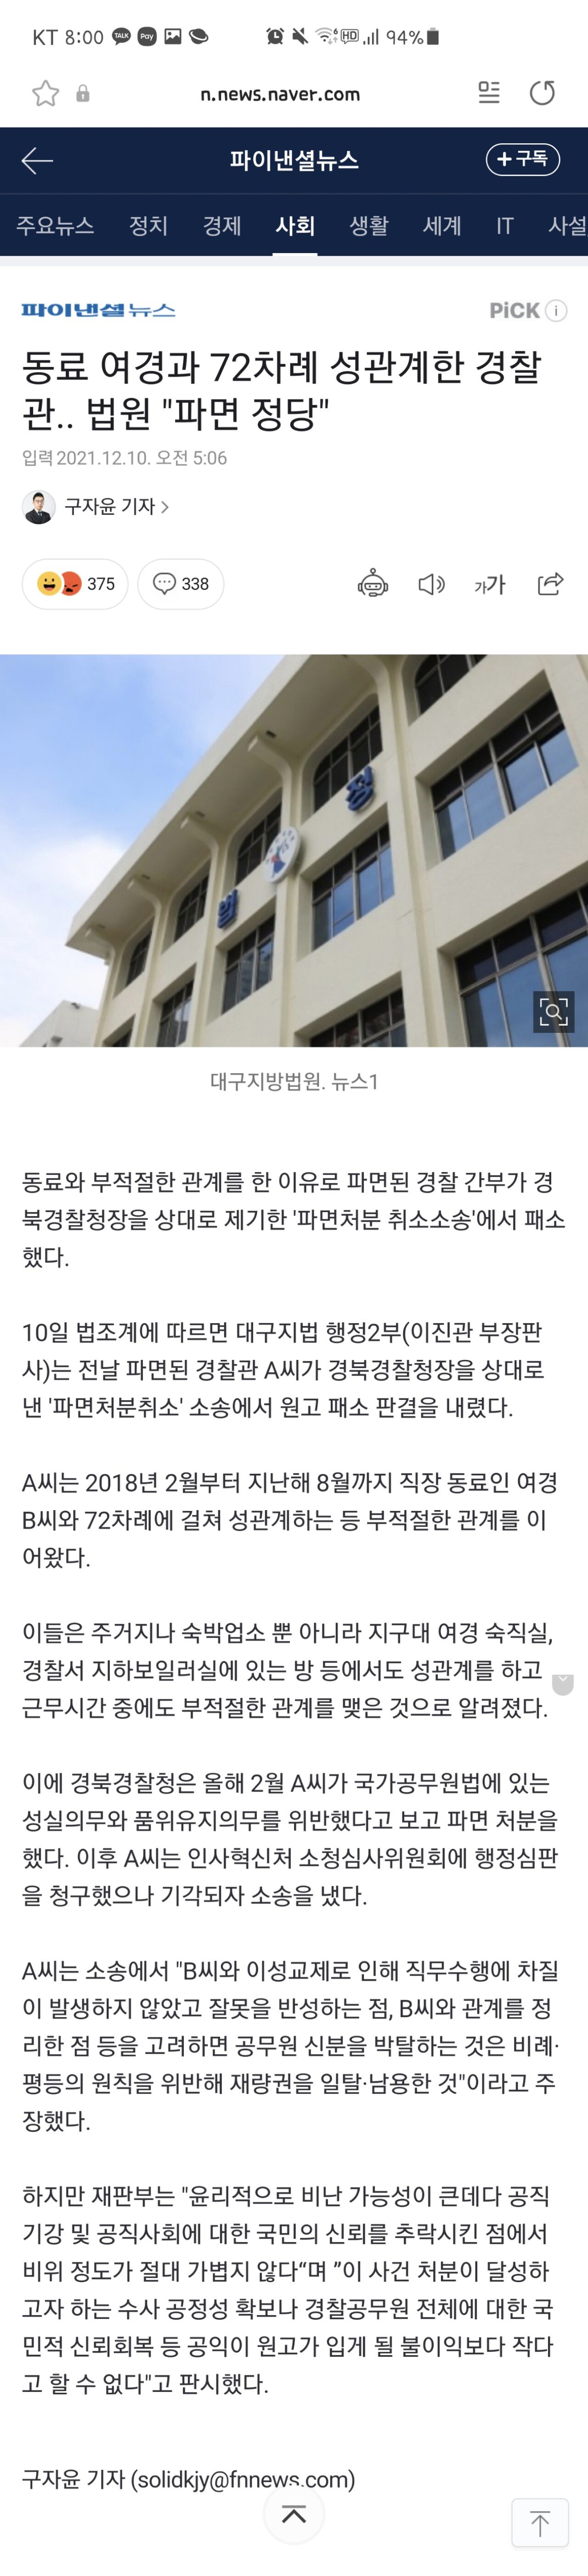 동료 여경과 72차례 성관계한 경찰관.. 법원 "파면 정당"